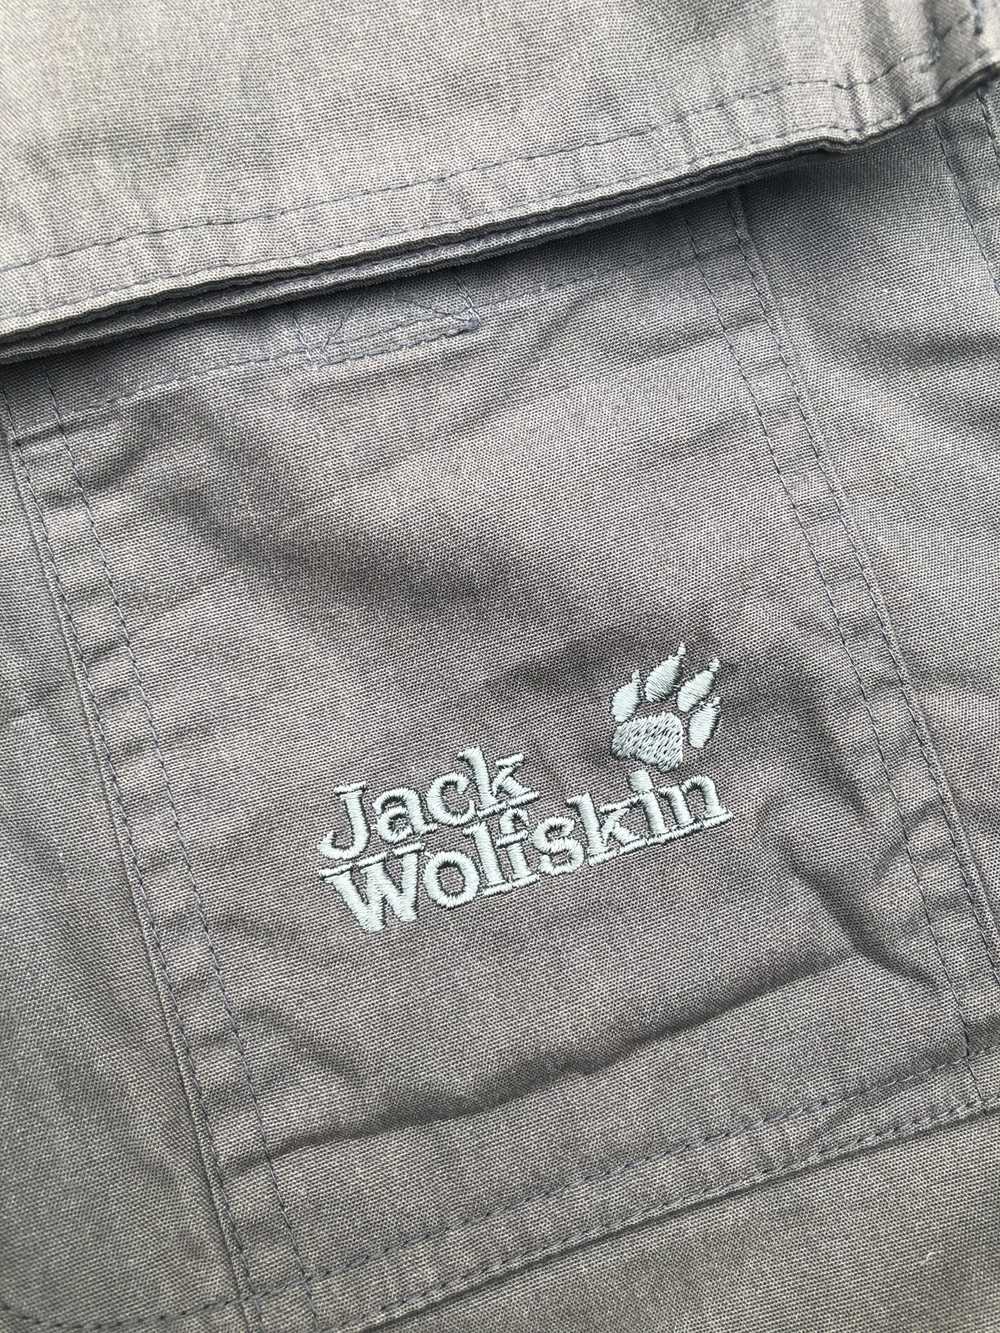 Jack Wolfskins × Vintage VINTAGE JACK WOLFSKINS D… - image 5